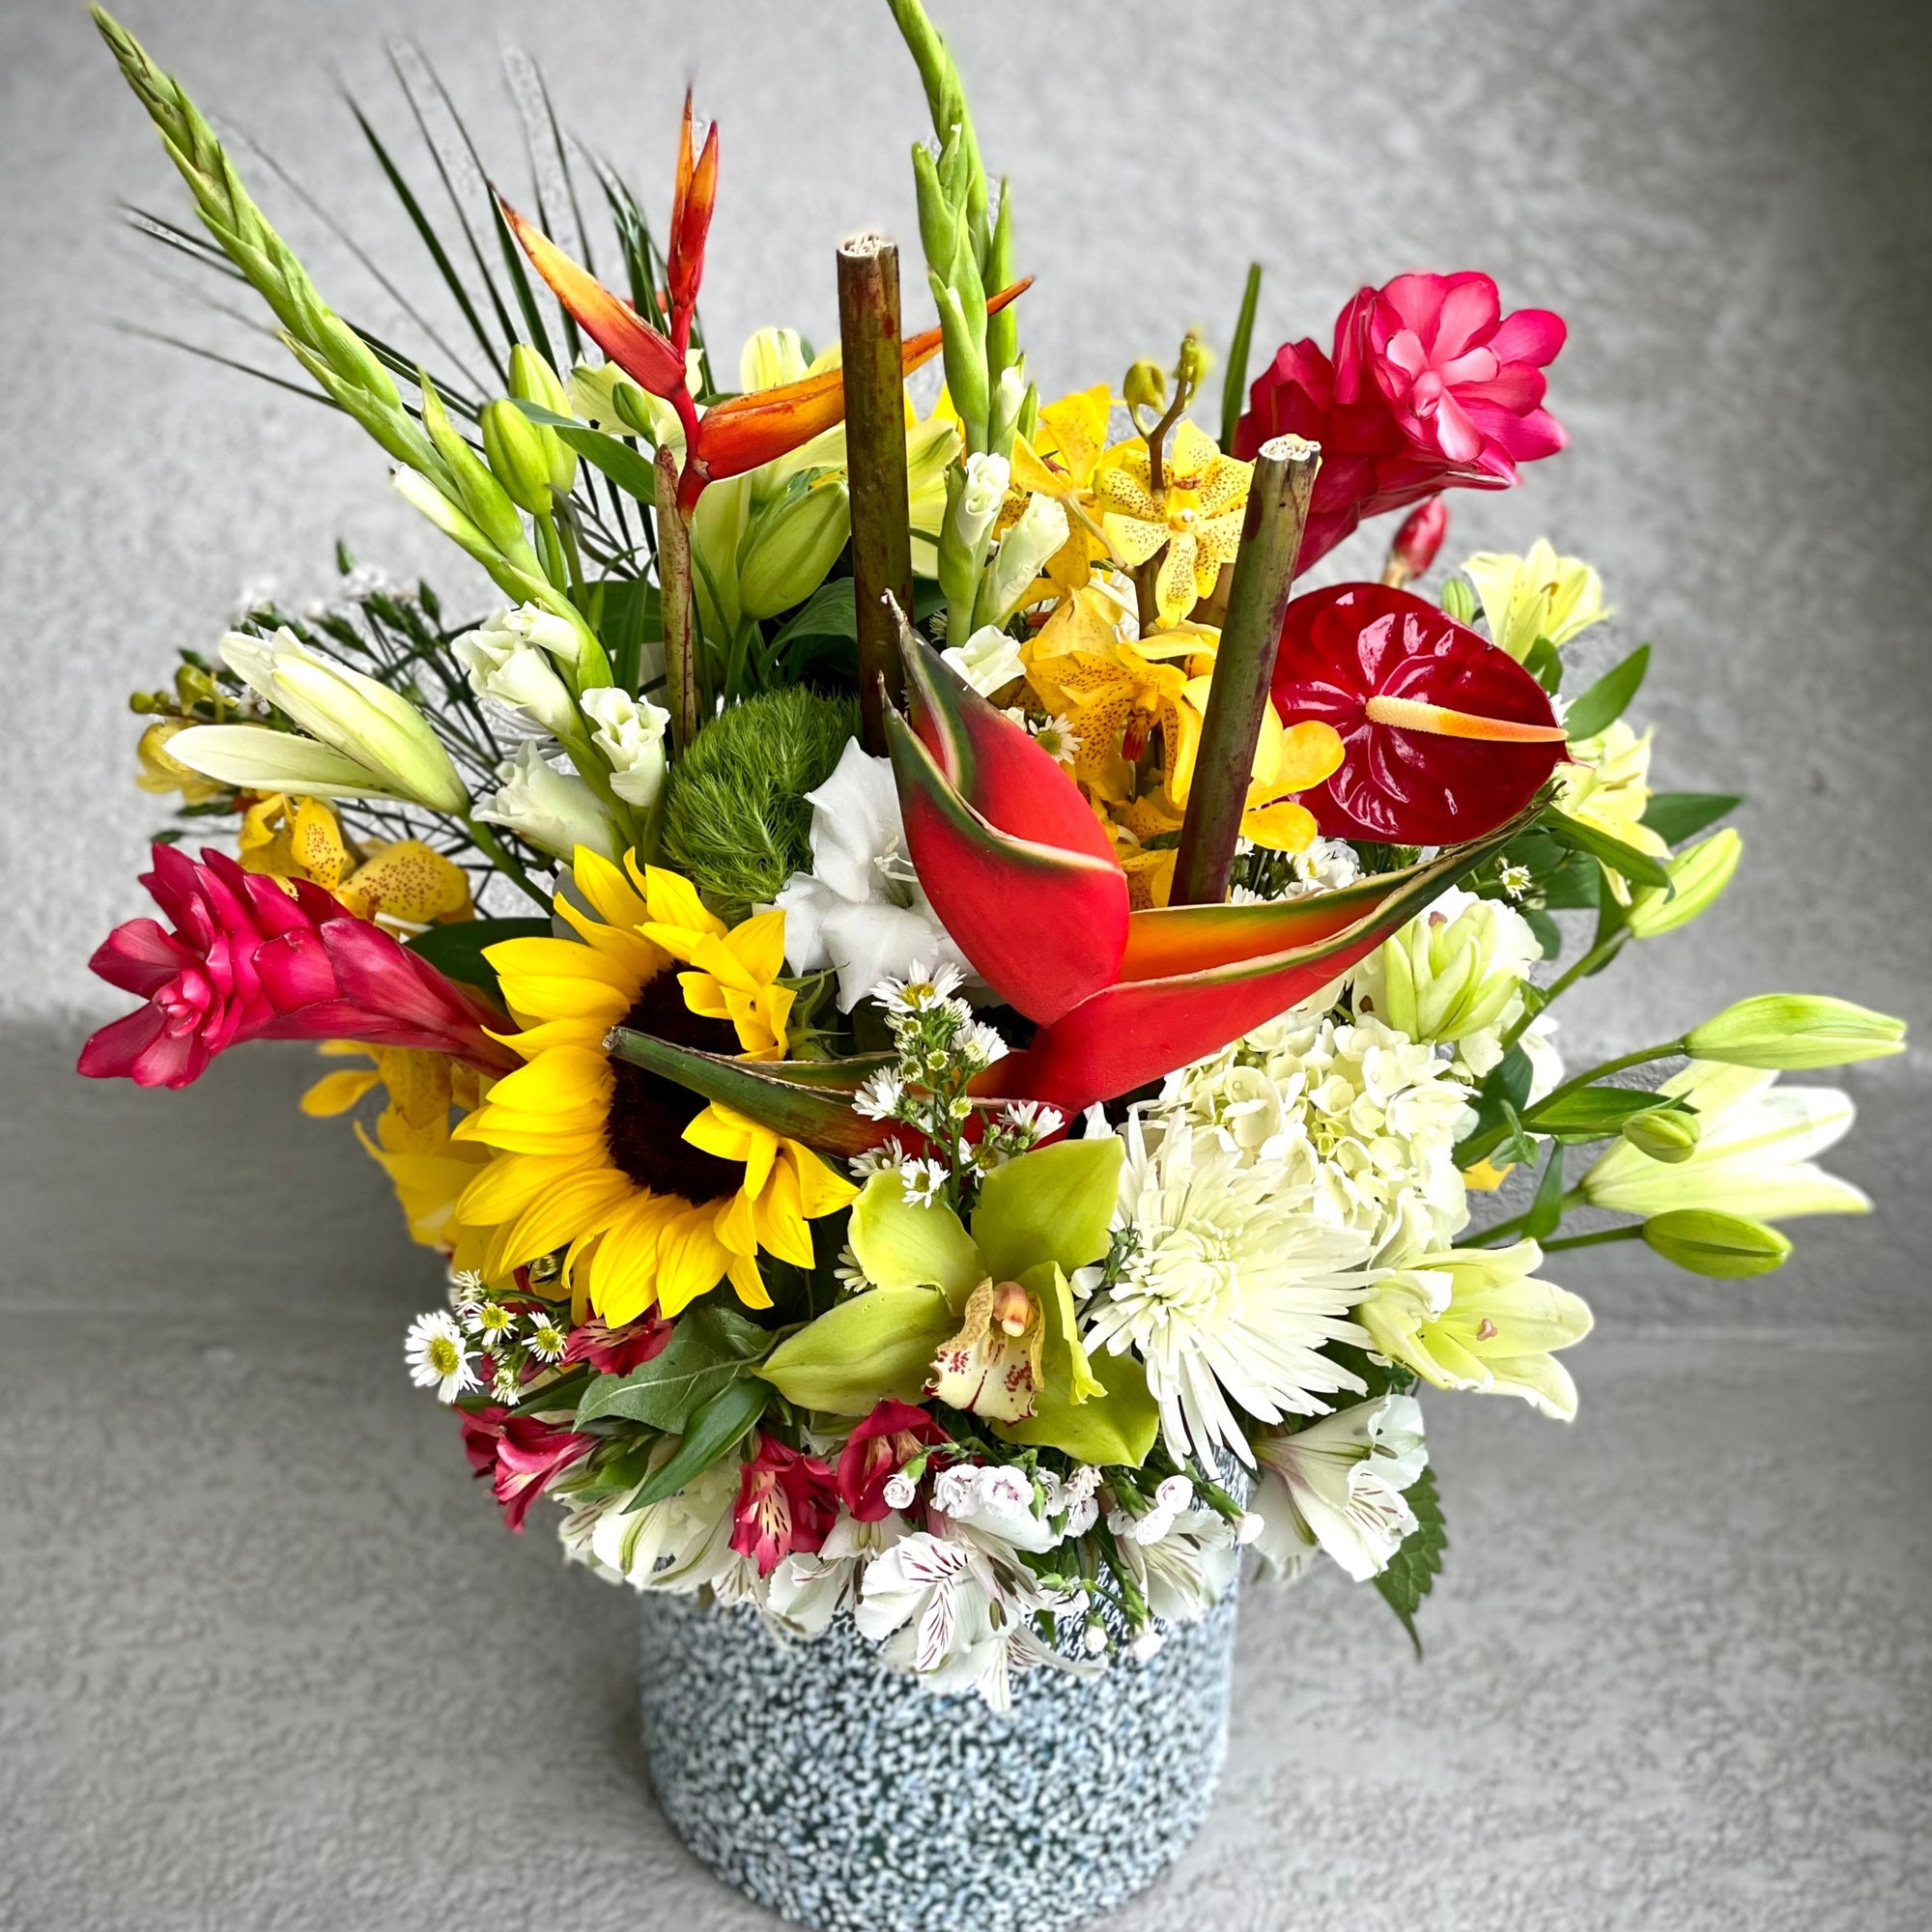 Tropical florist choice arrangement